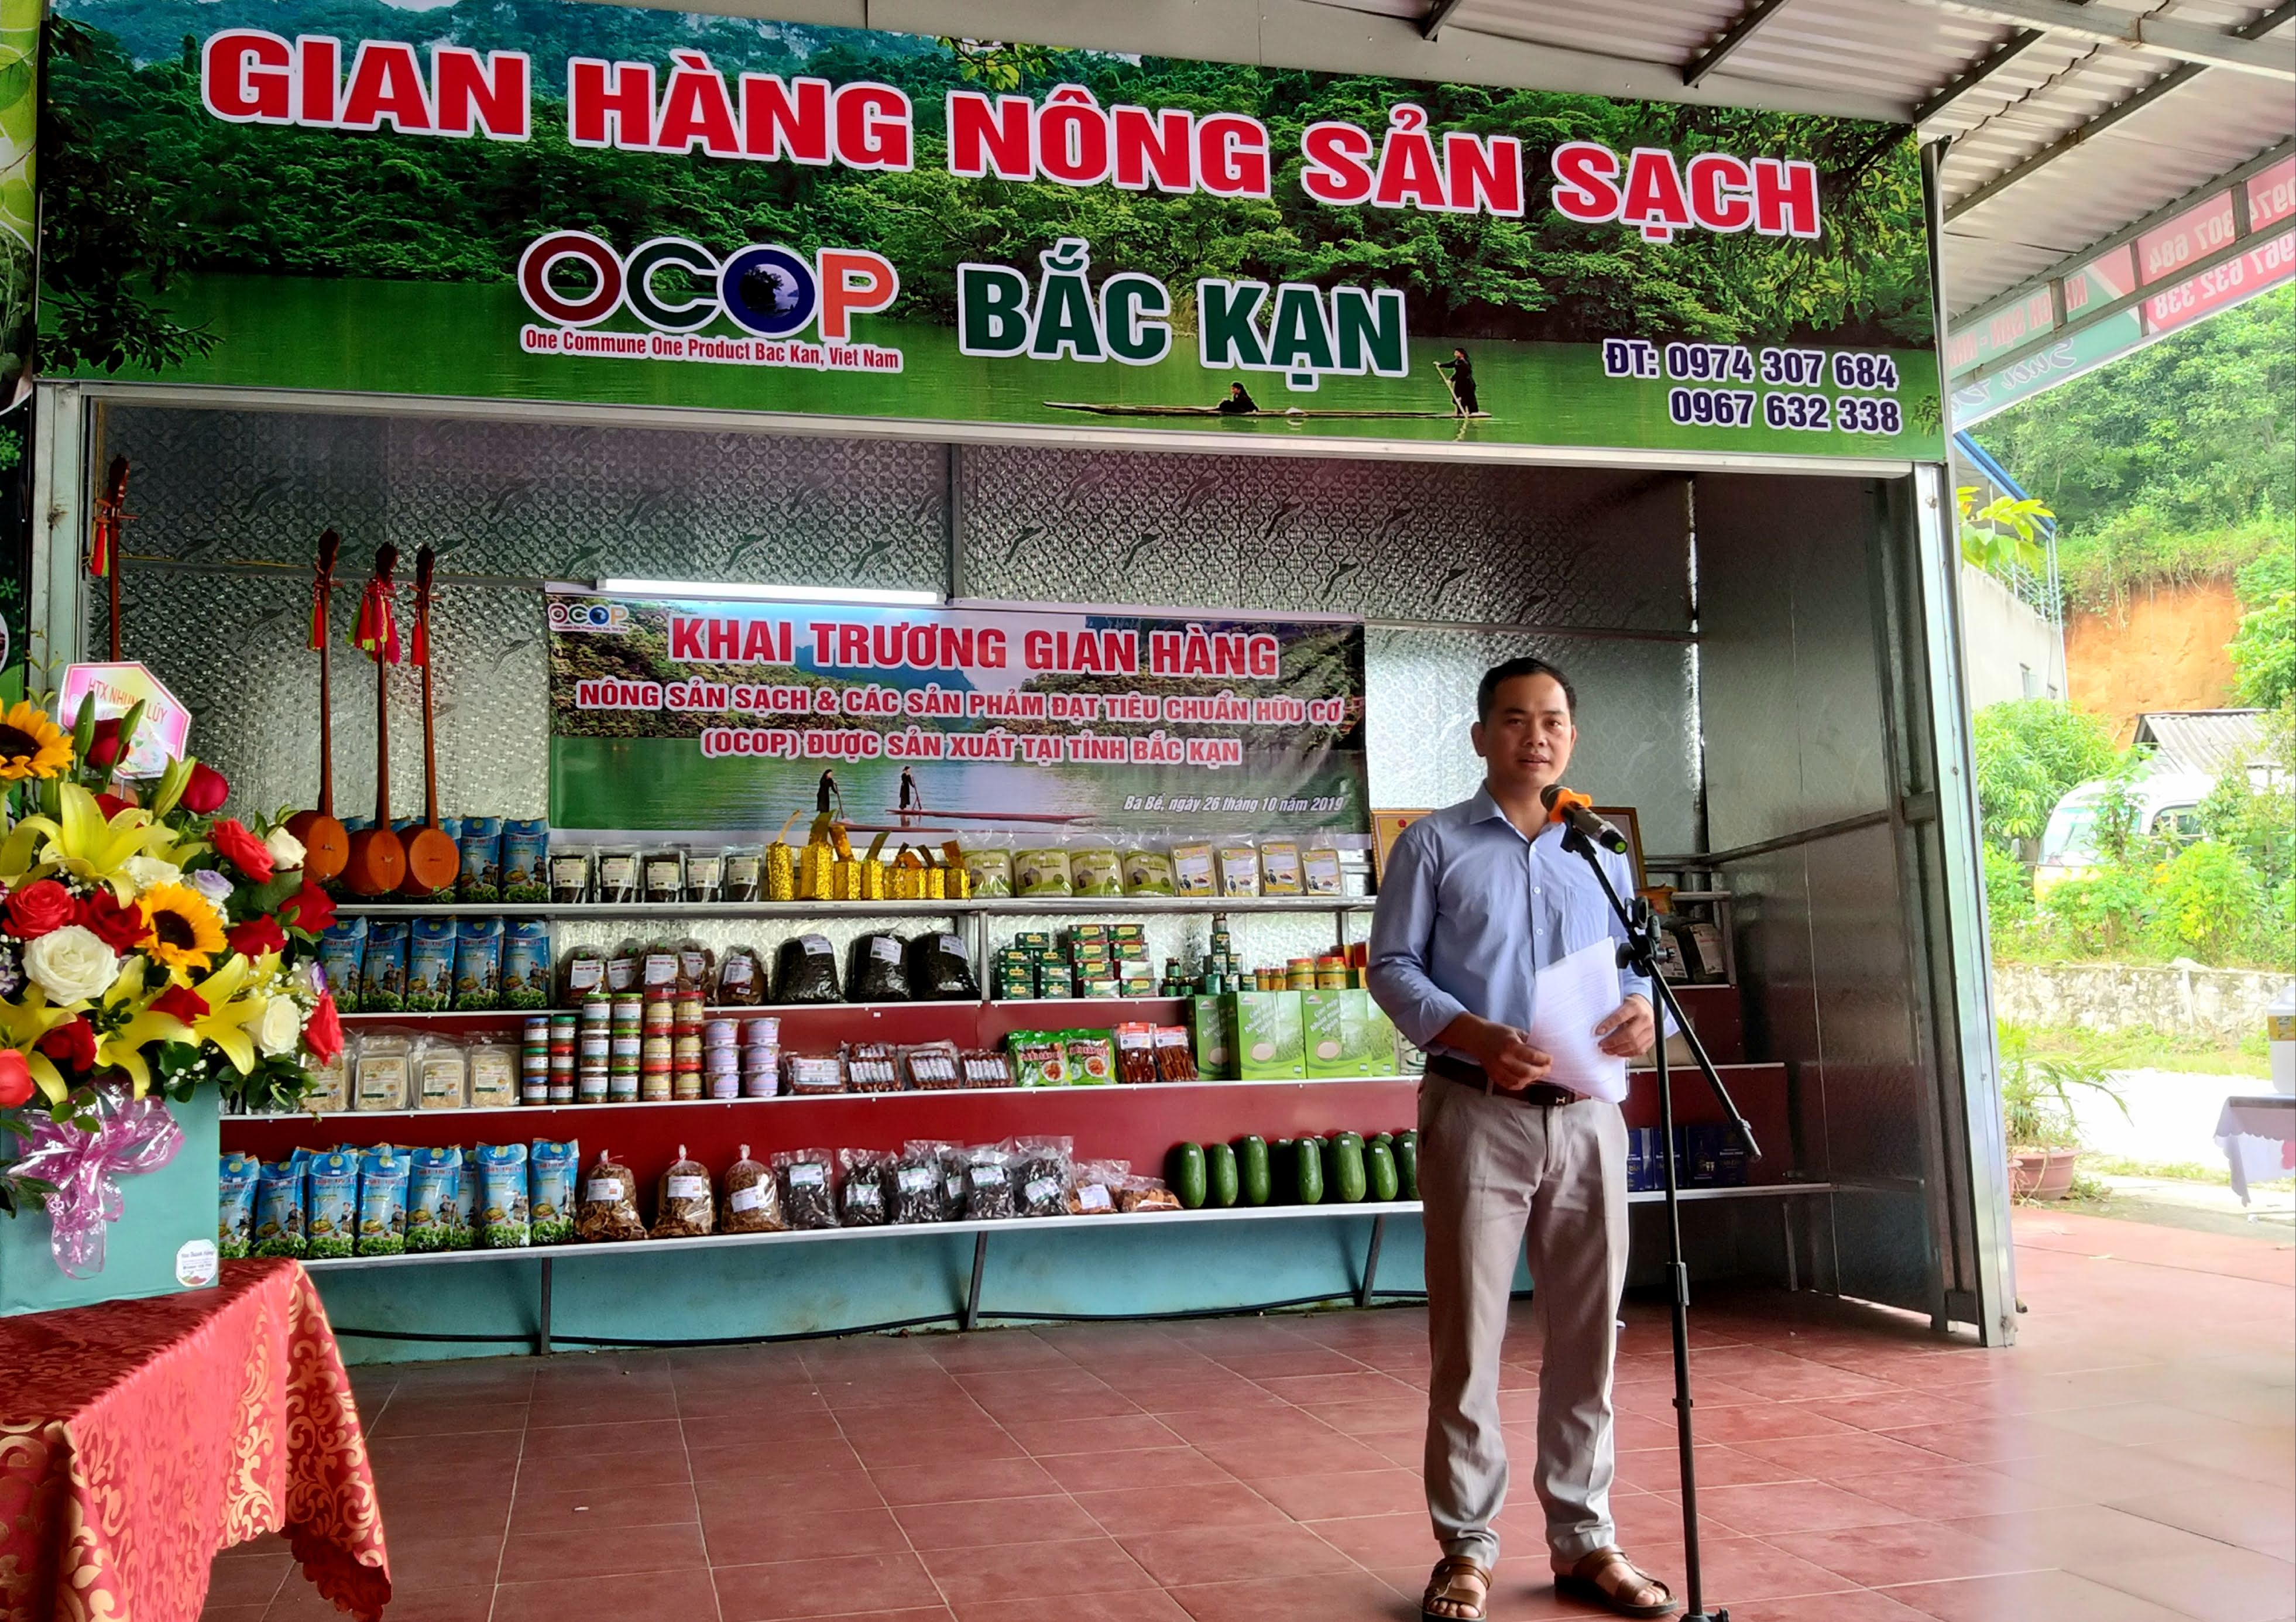 gian hàng nông sản sạch và các sản phẩm OCOP huyện Ba Bể, tỉnh Bắc Kạn